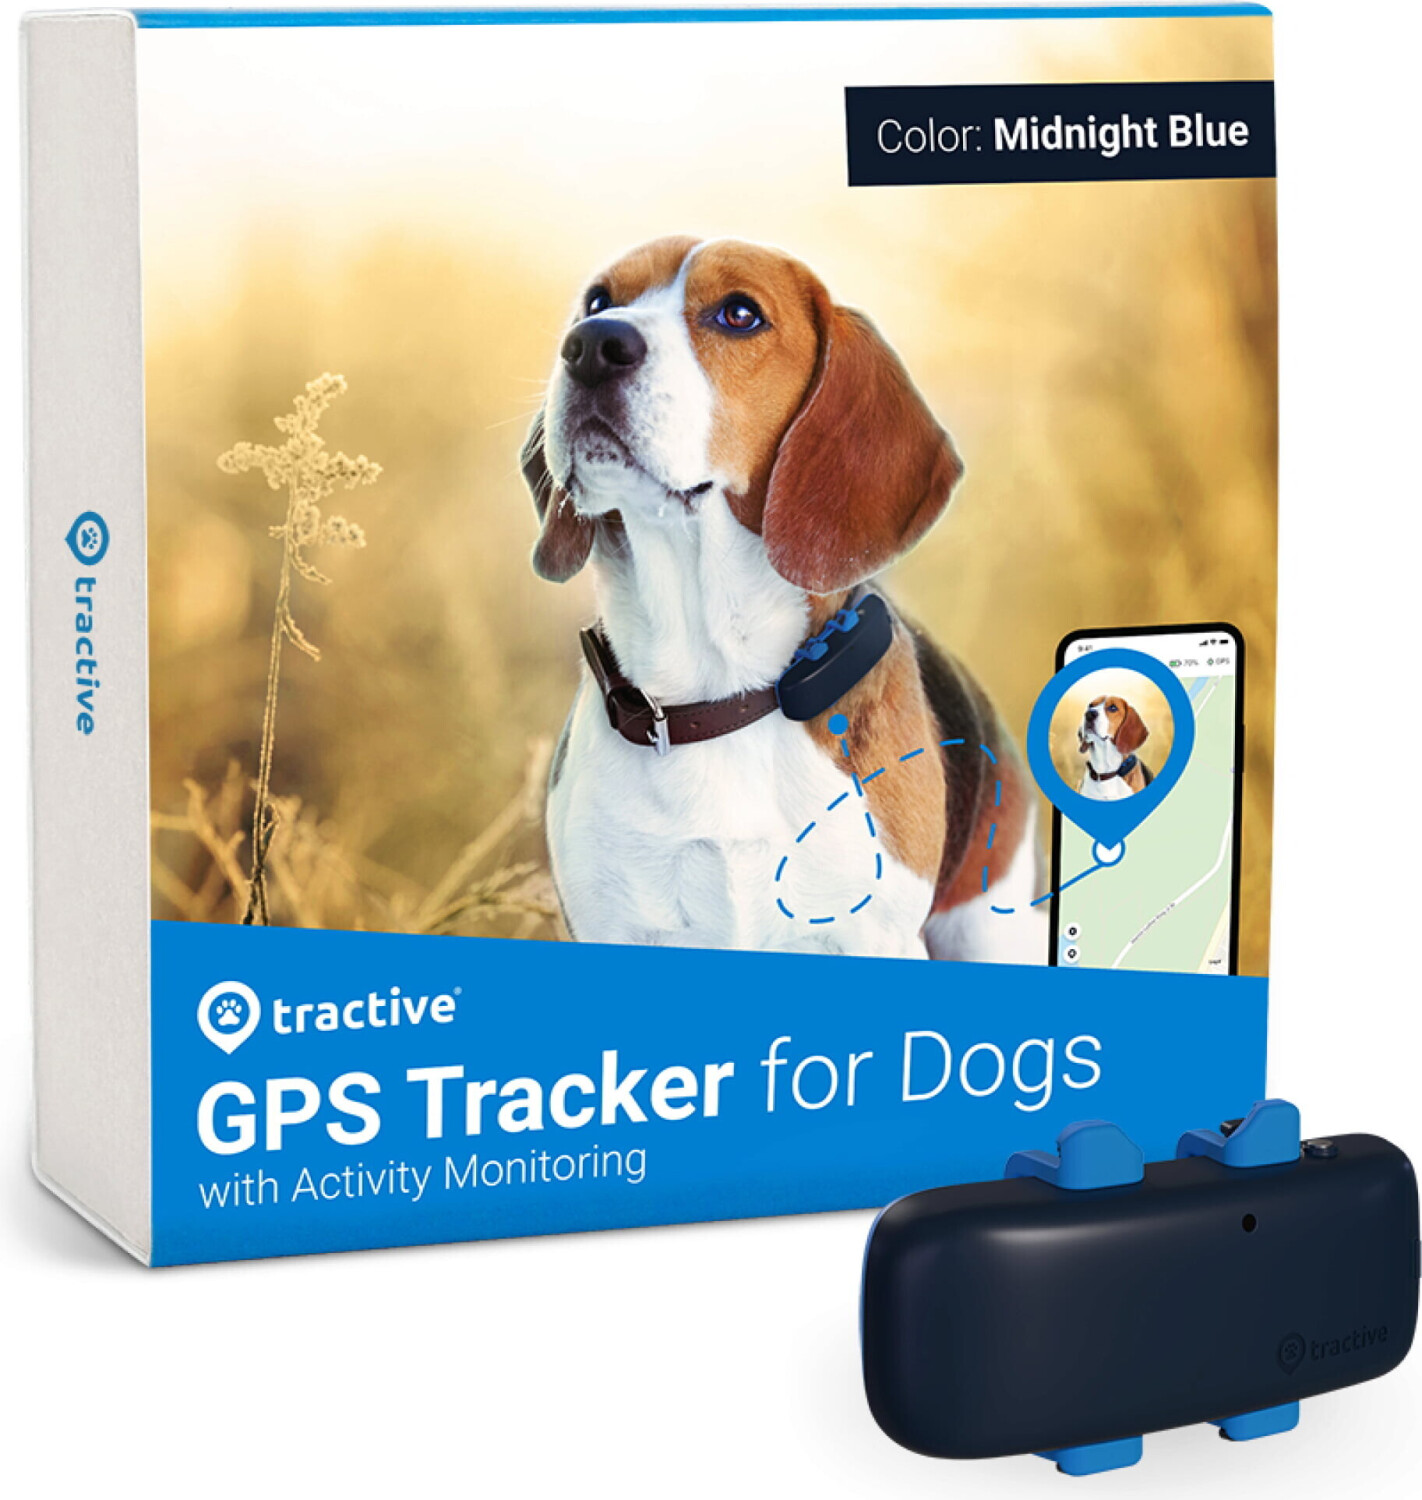 INVOXIA INVOXIA - GPS-Tracker für Katzen und Hun…